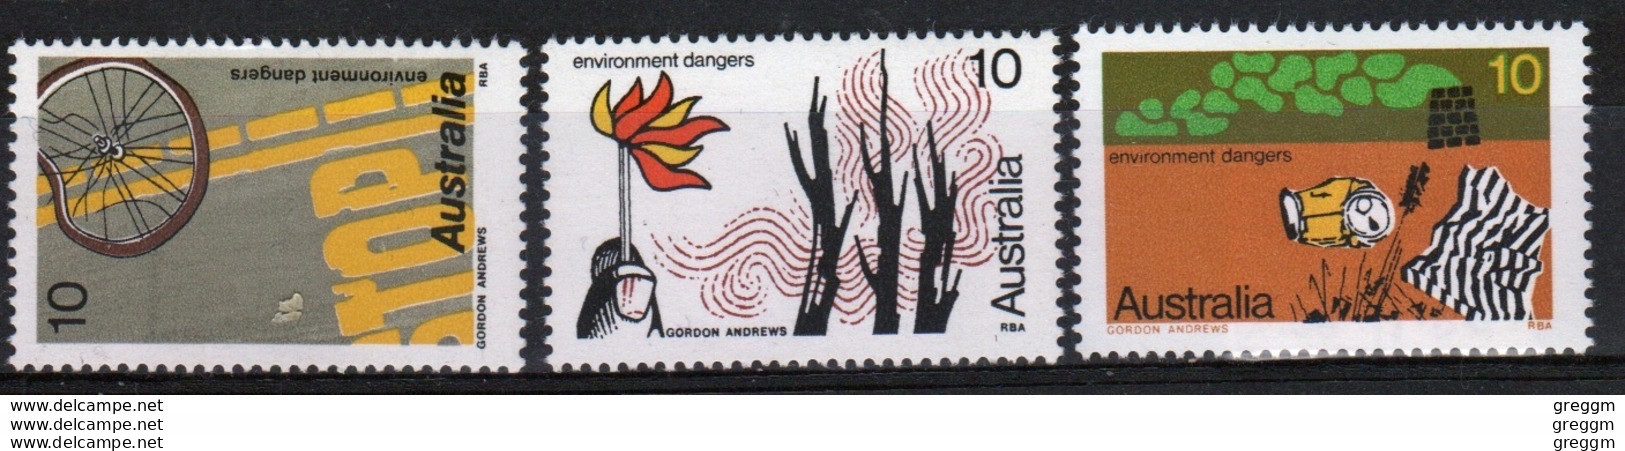 Australia 1975 Queen Elizabeth Set Of Stamps To Environment Dangers. - Ongebruikt